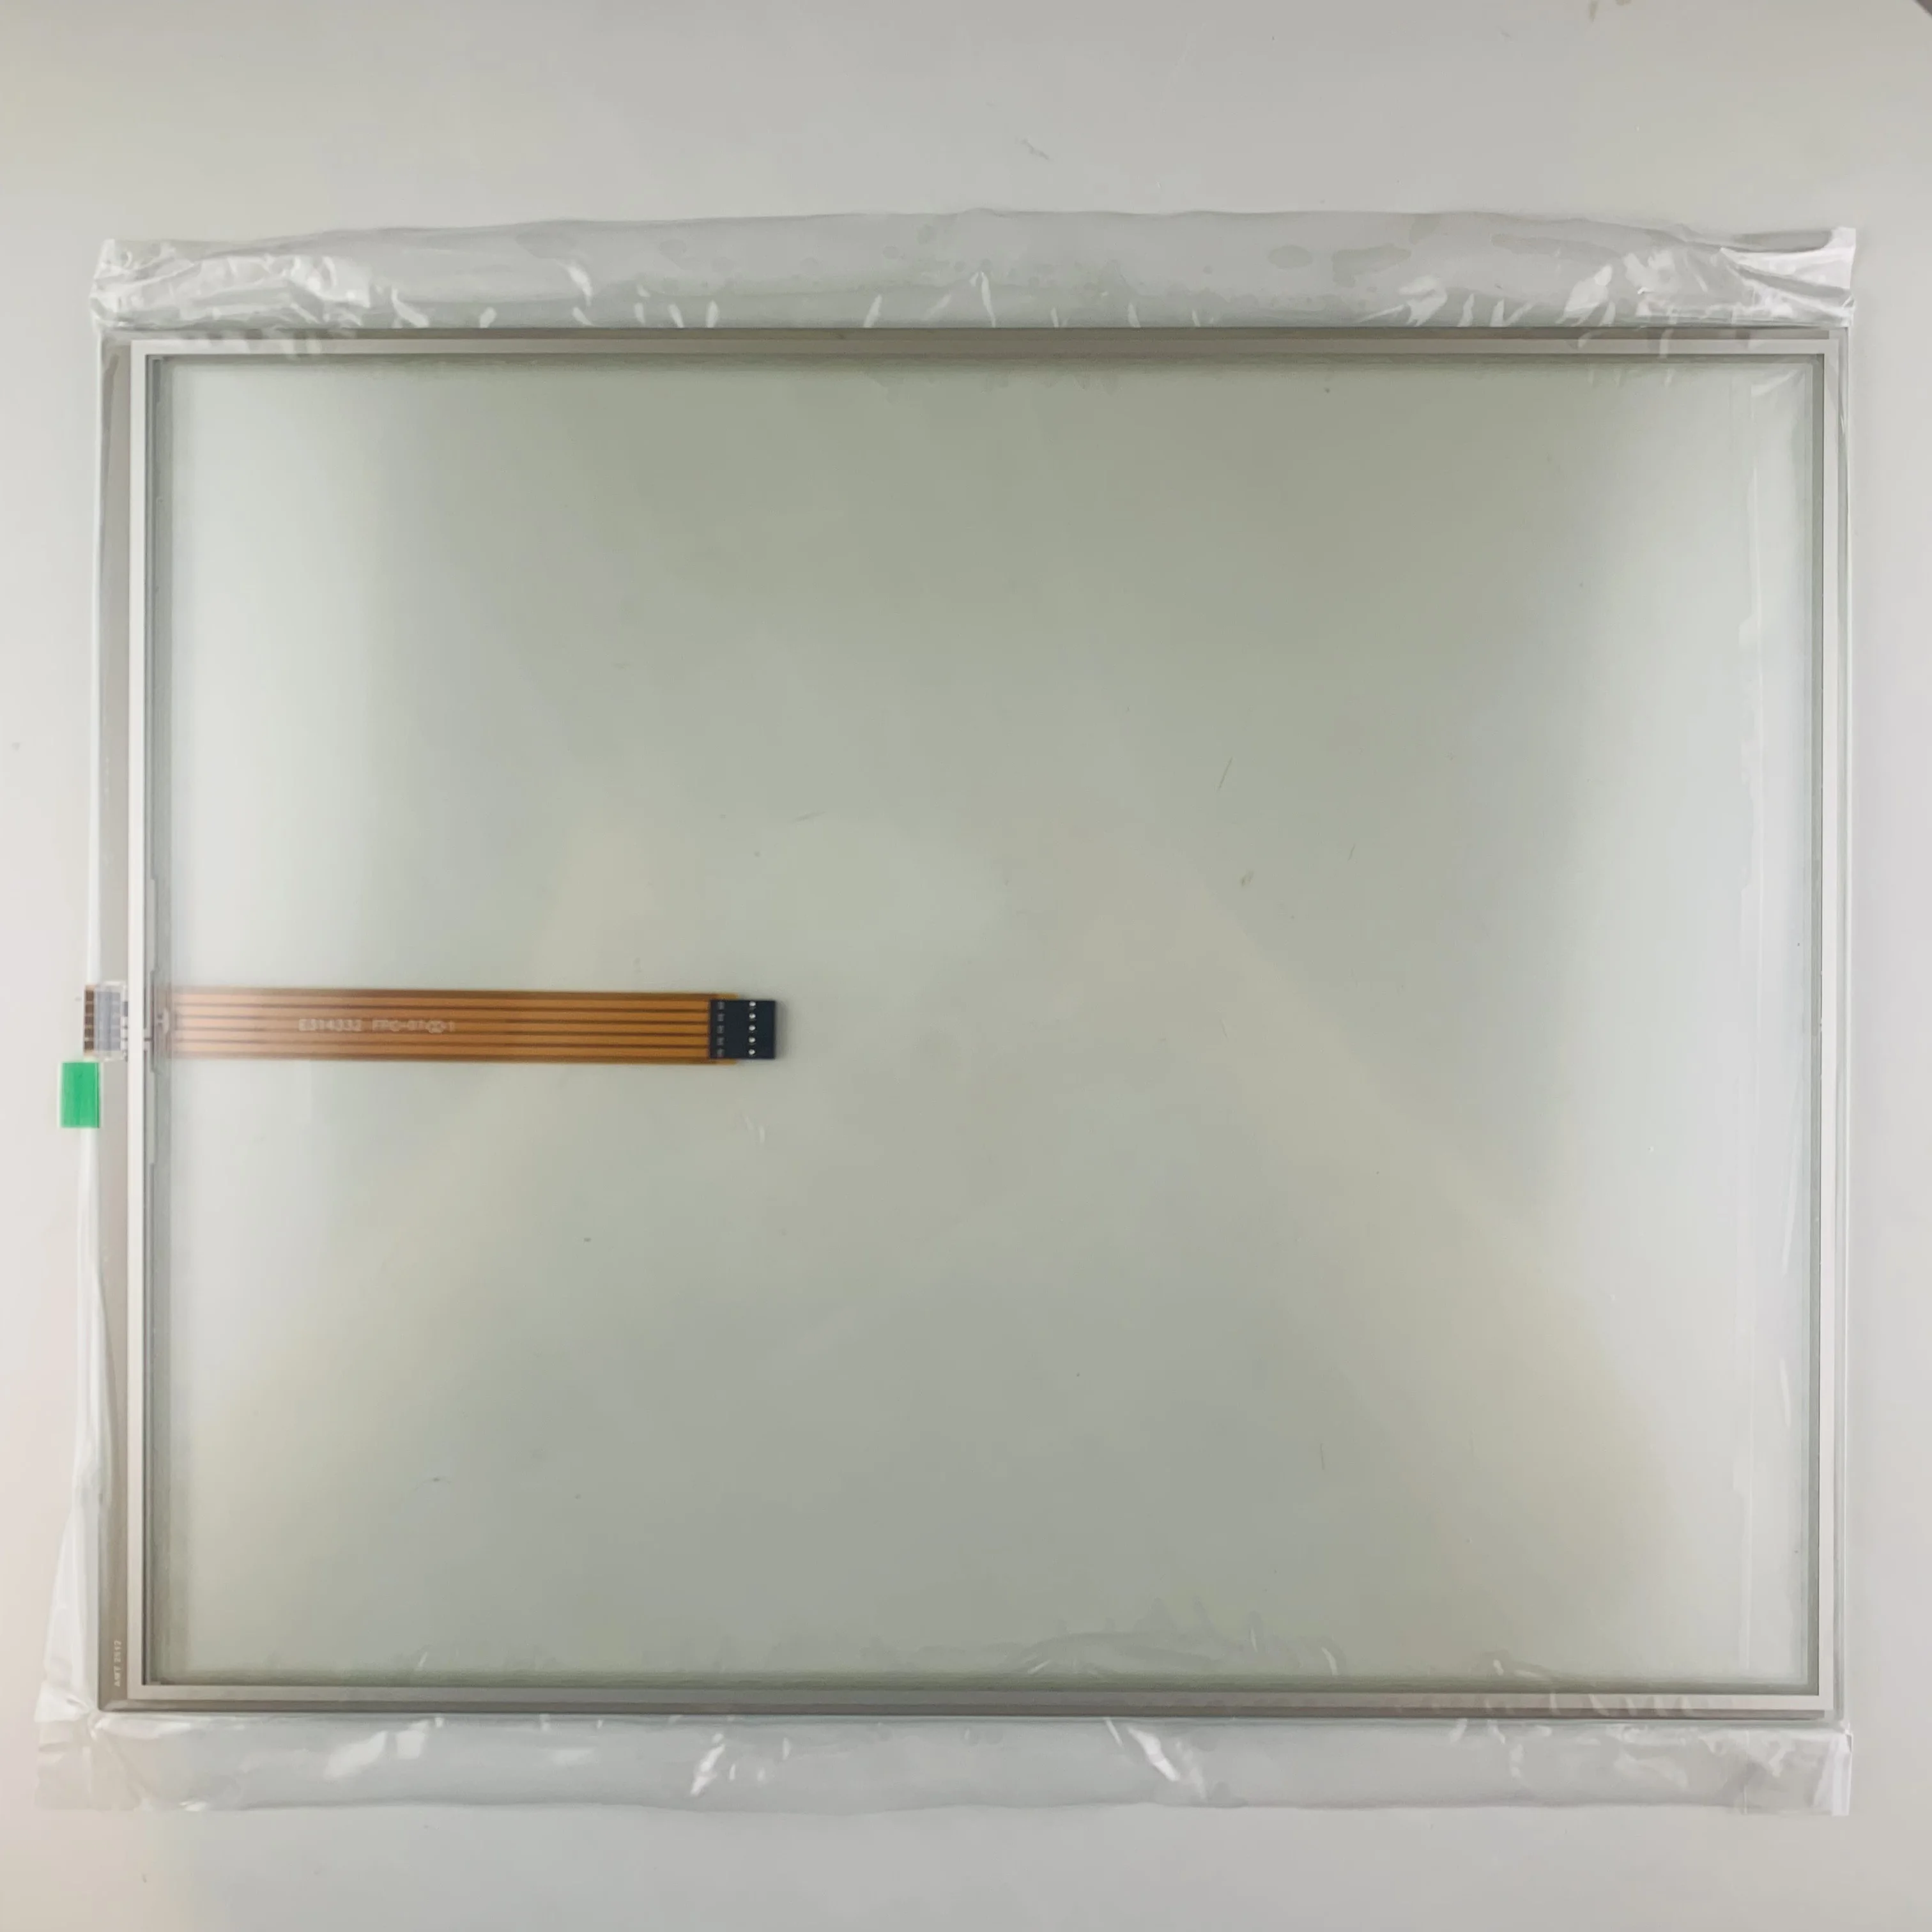 

Новое диагональное Сенсорное стекло диагональю 17 дюймов для ремонта Advantech-IPC, доступны и запасы